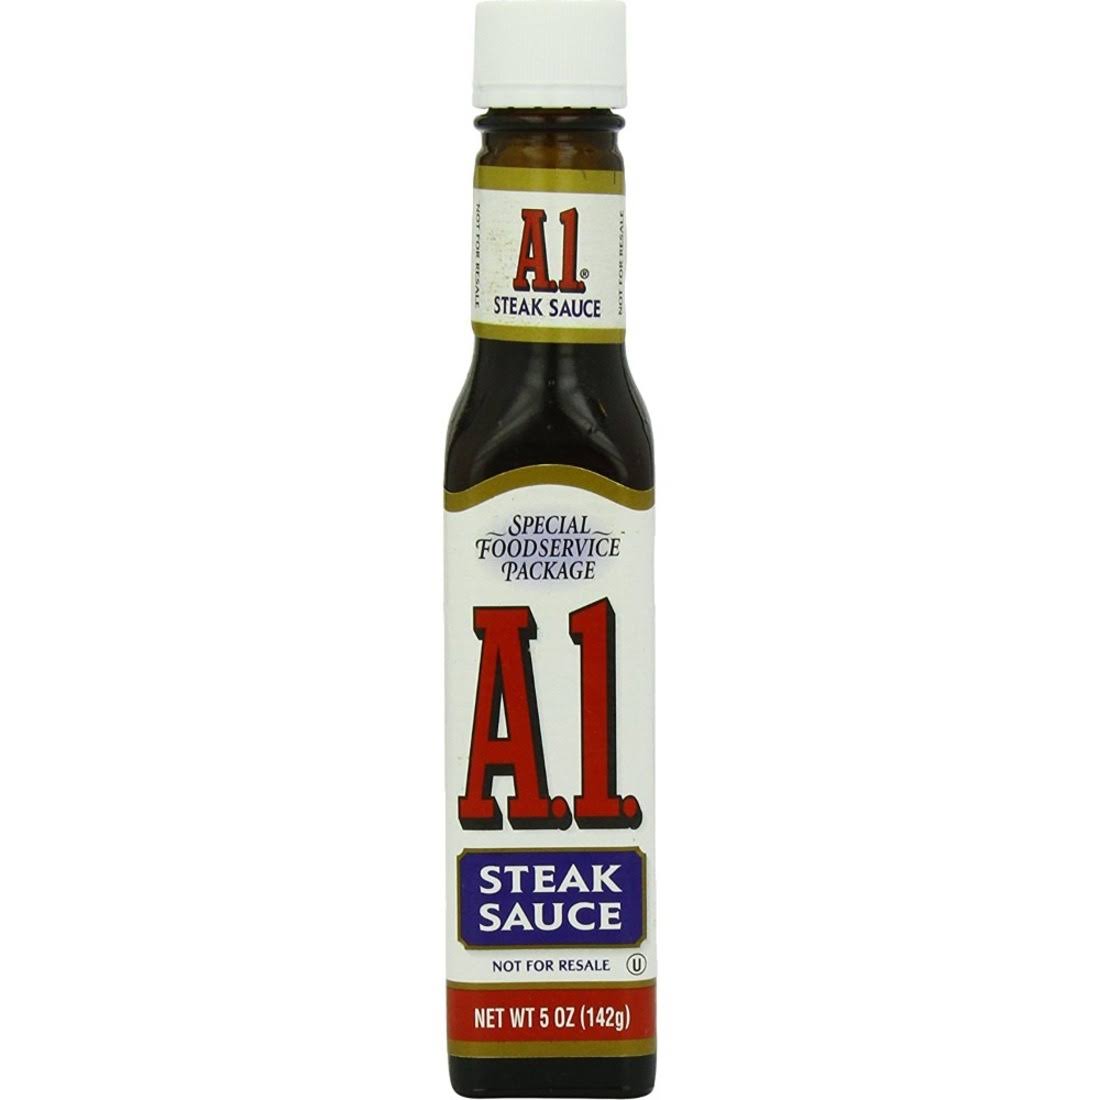 A1 Steak Sauce - 5oz, 24pk